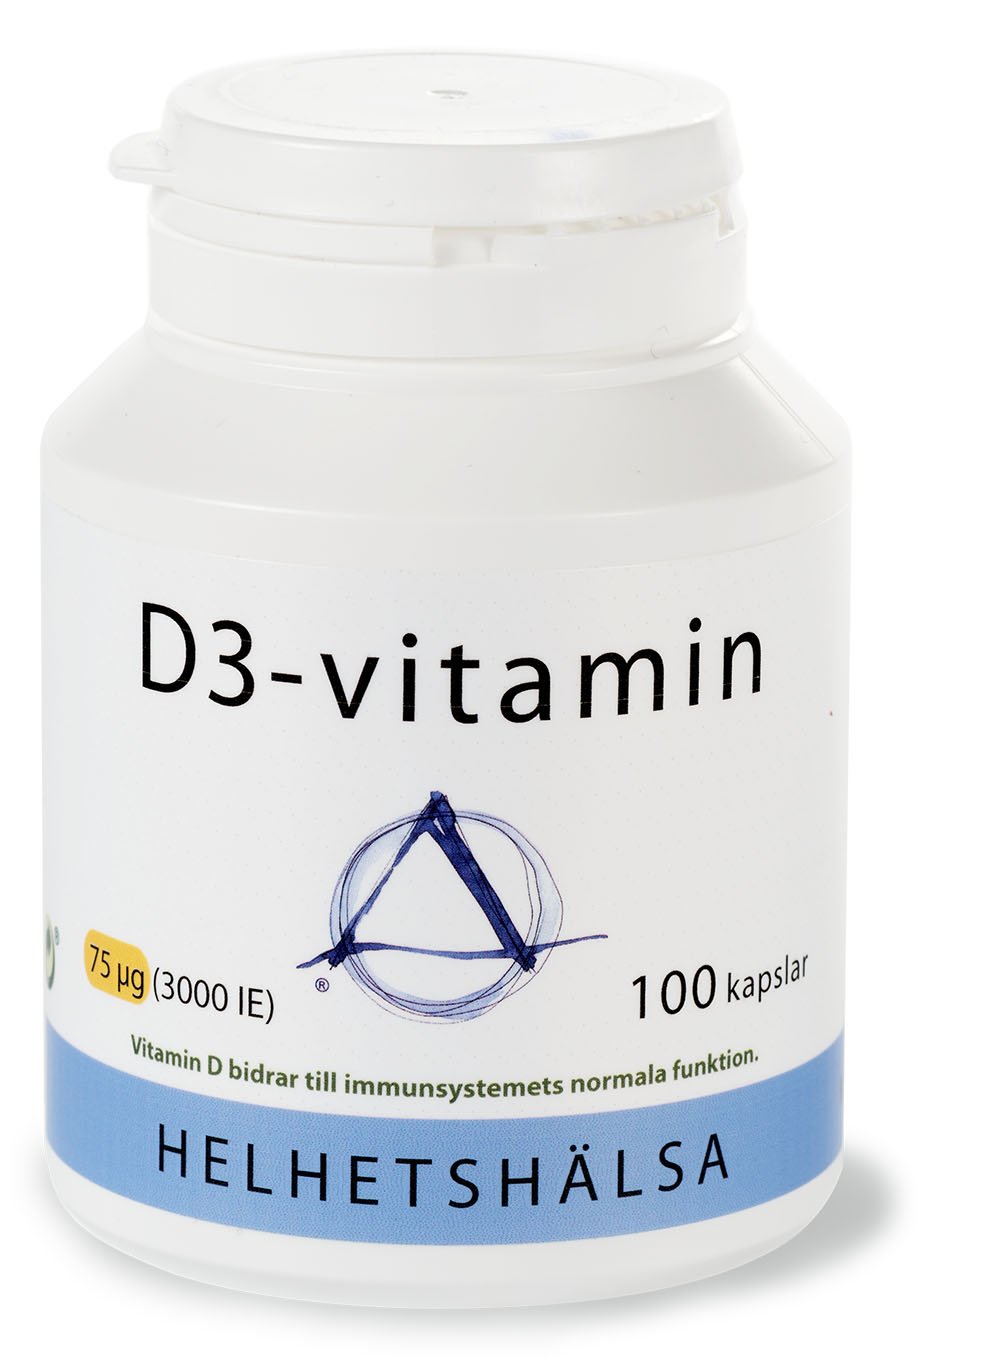 Helhetshälsa D3-vitamin 75 µg (3000IE ) 100 kapslar